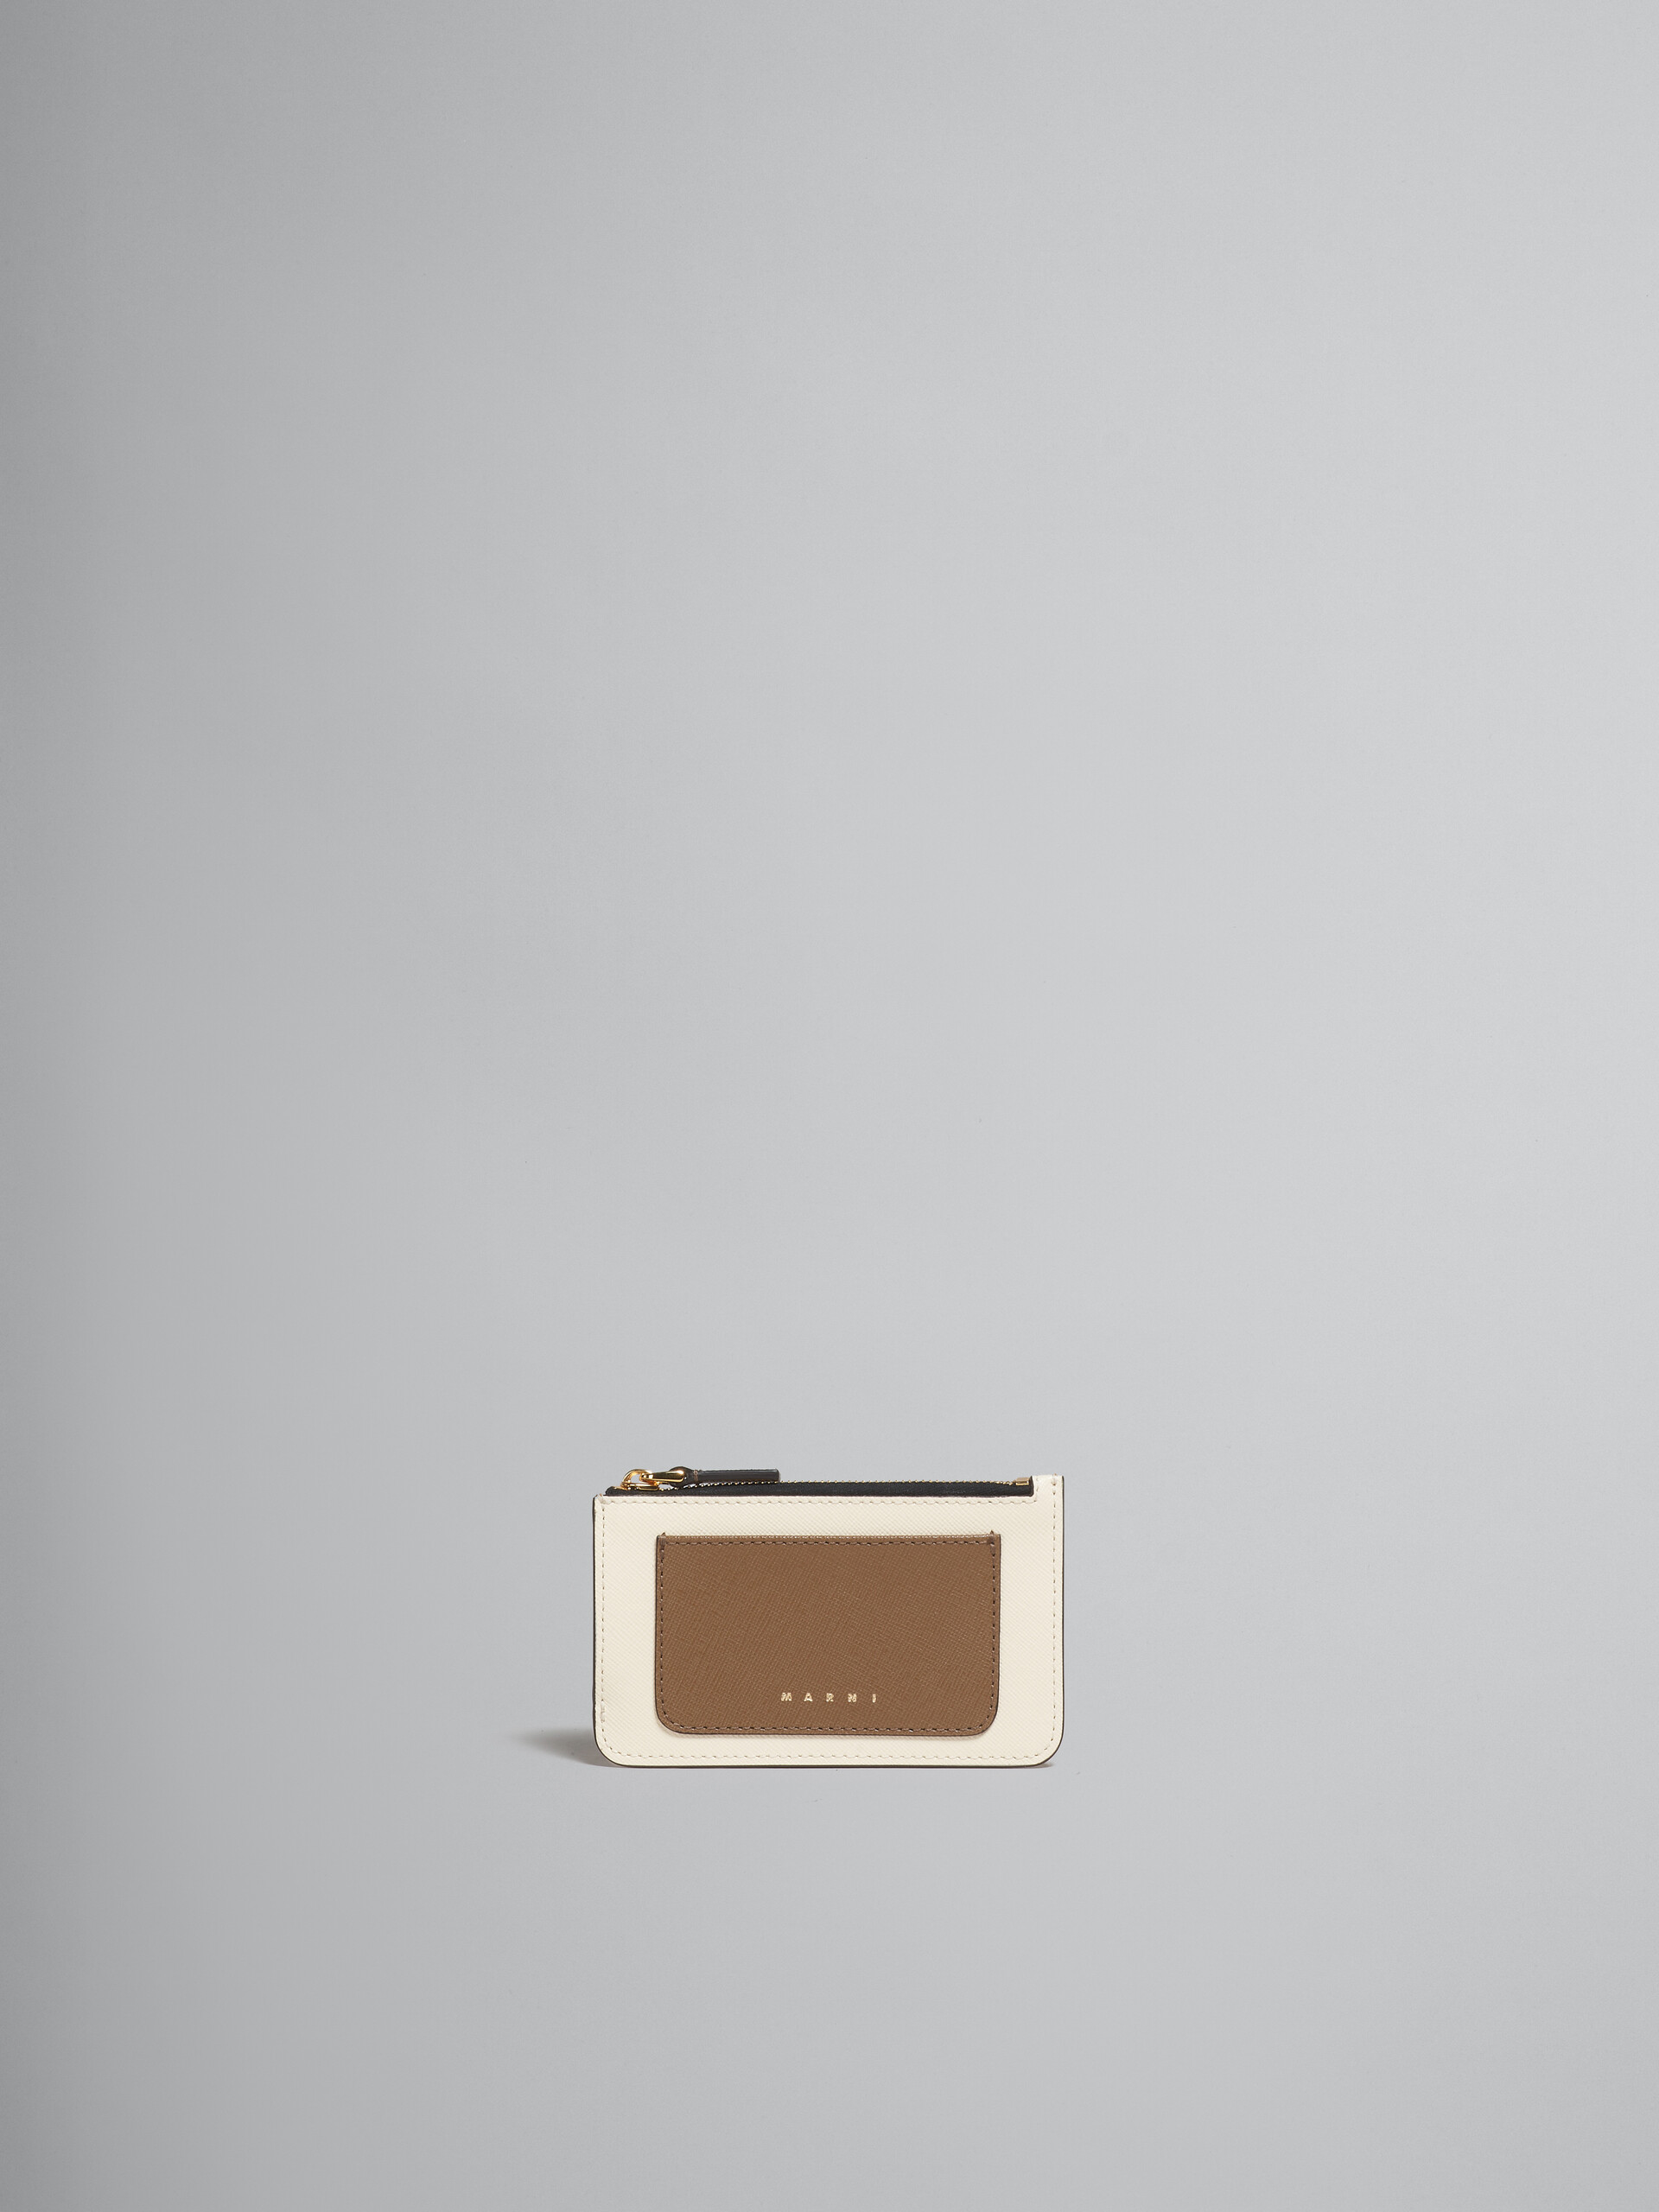 Porte-cartes en cuir saffiano vert clair, blanc et marron - Portefeuilles - Image 1